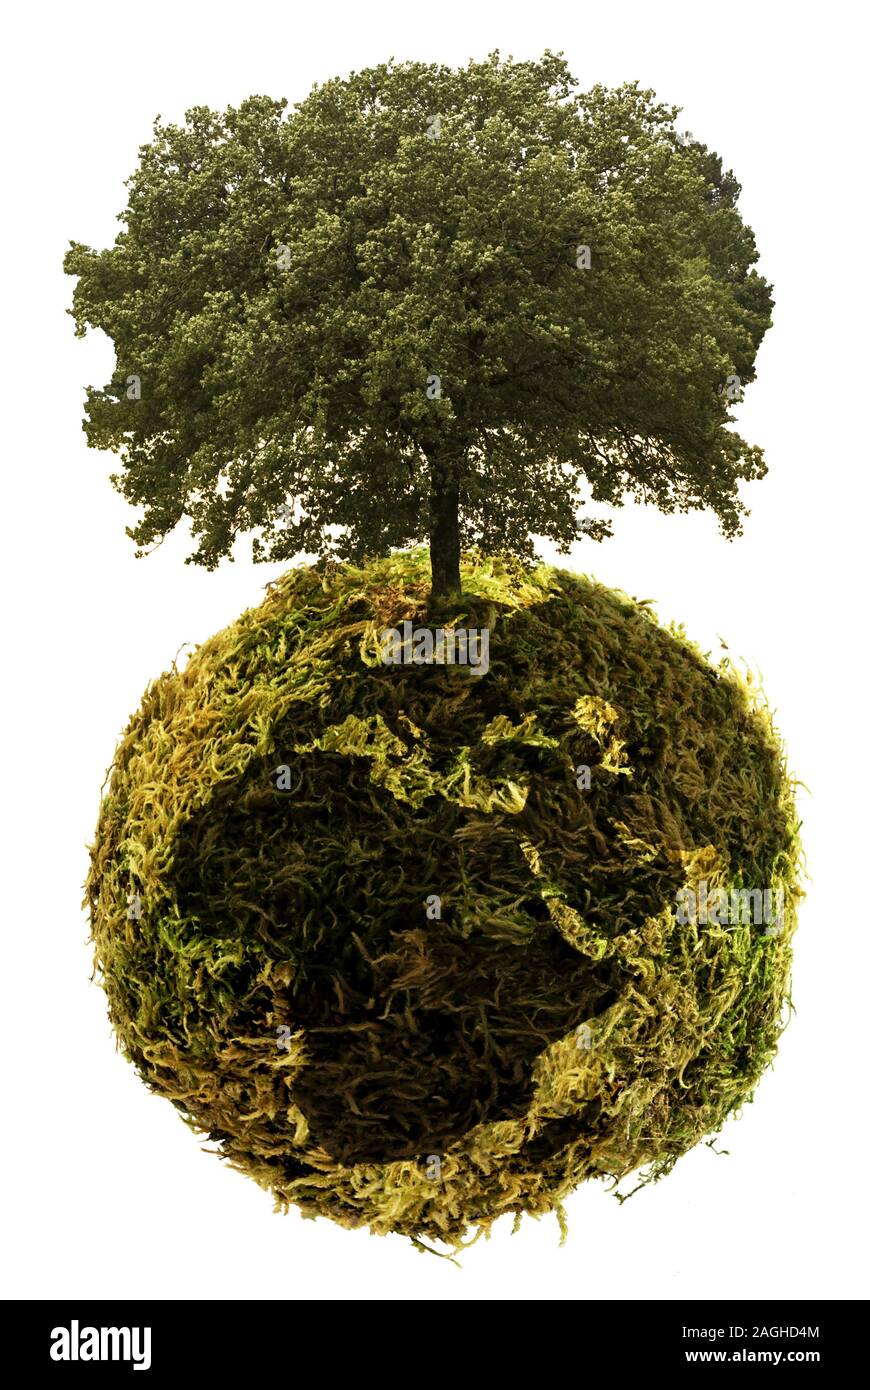 Abstraktes Bild der ökologischen und grünen Erdkugel mit Baum, auf den weißen Hintergrund Stockfoto